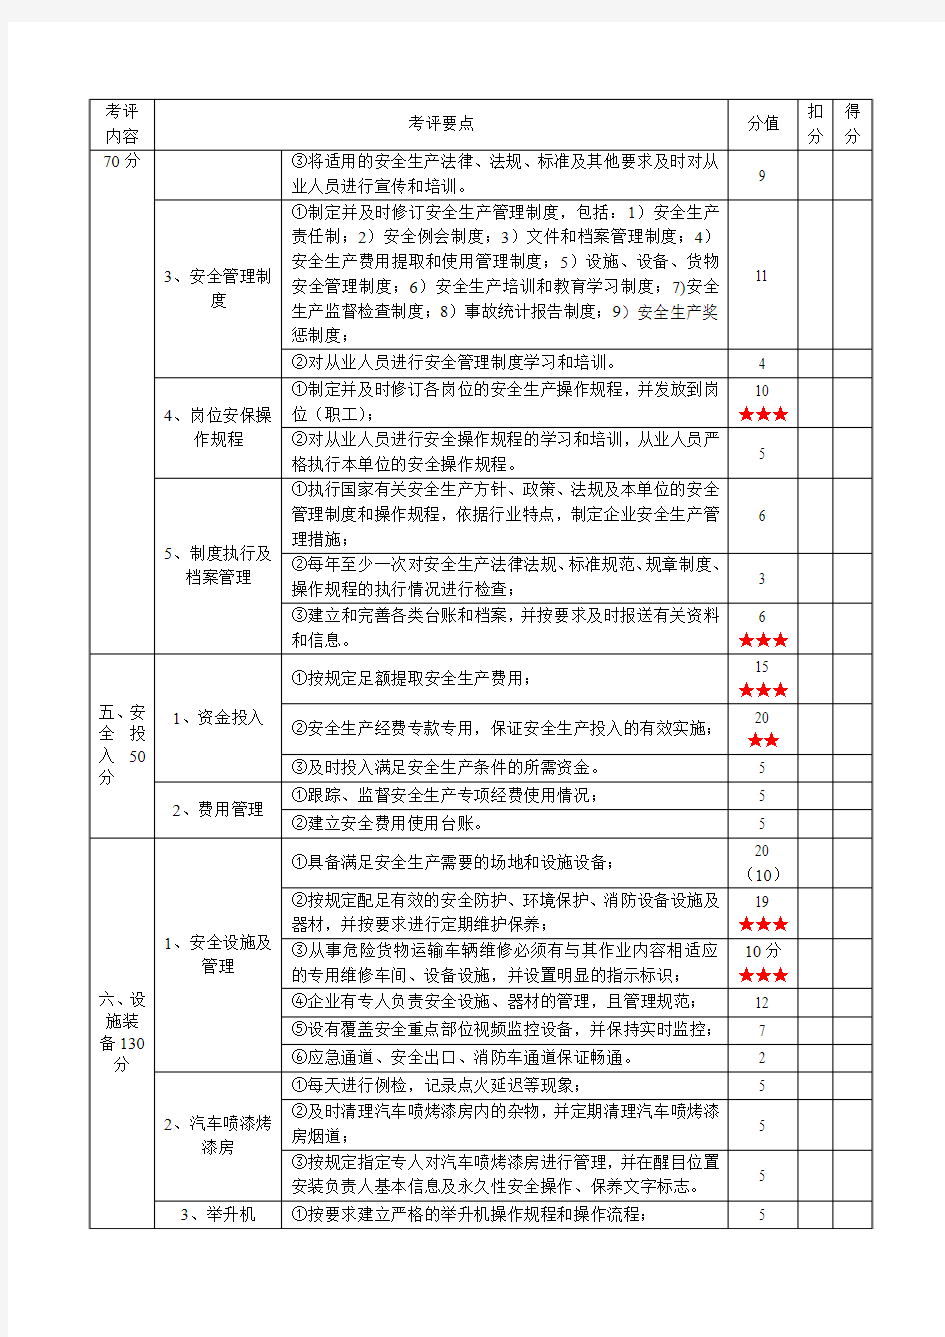 八、天津市机动车维修企业安全生产达标考评指标(企业自评)